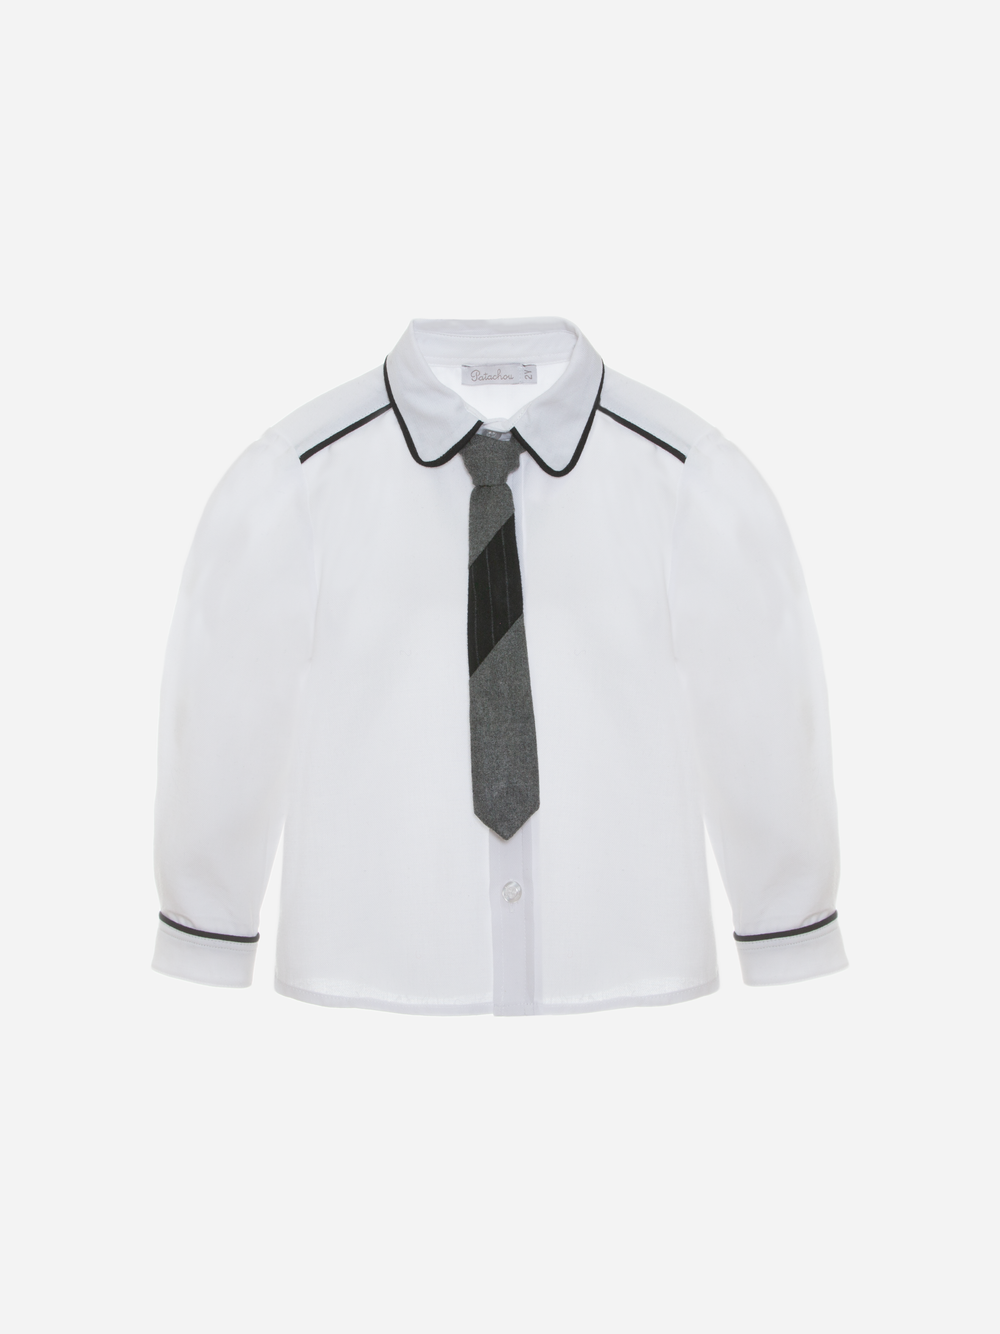 Camisa em vaiela branca com gravata cinza mescla